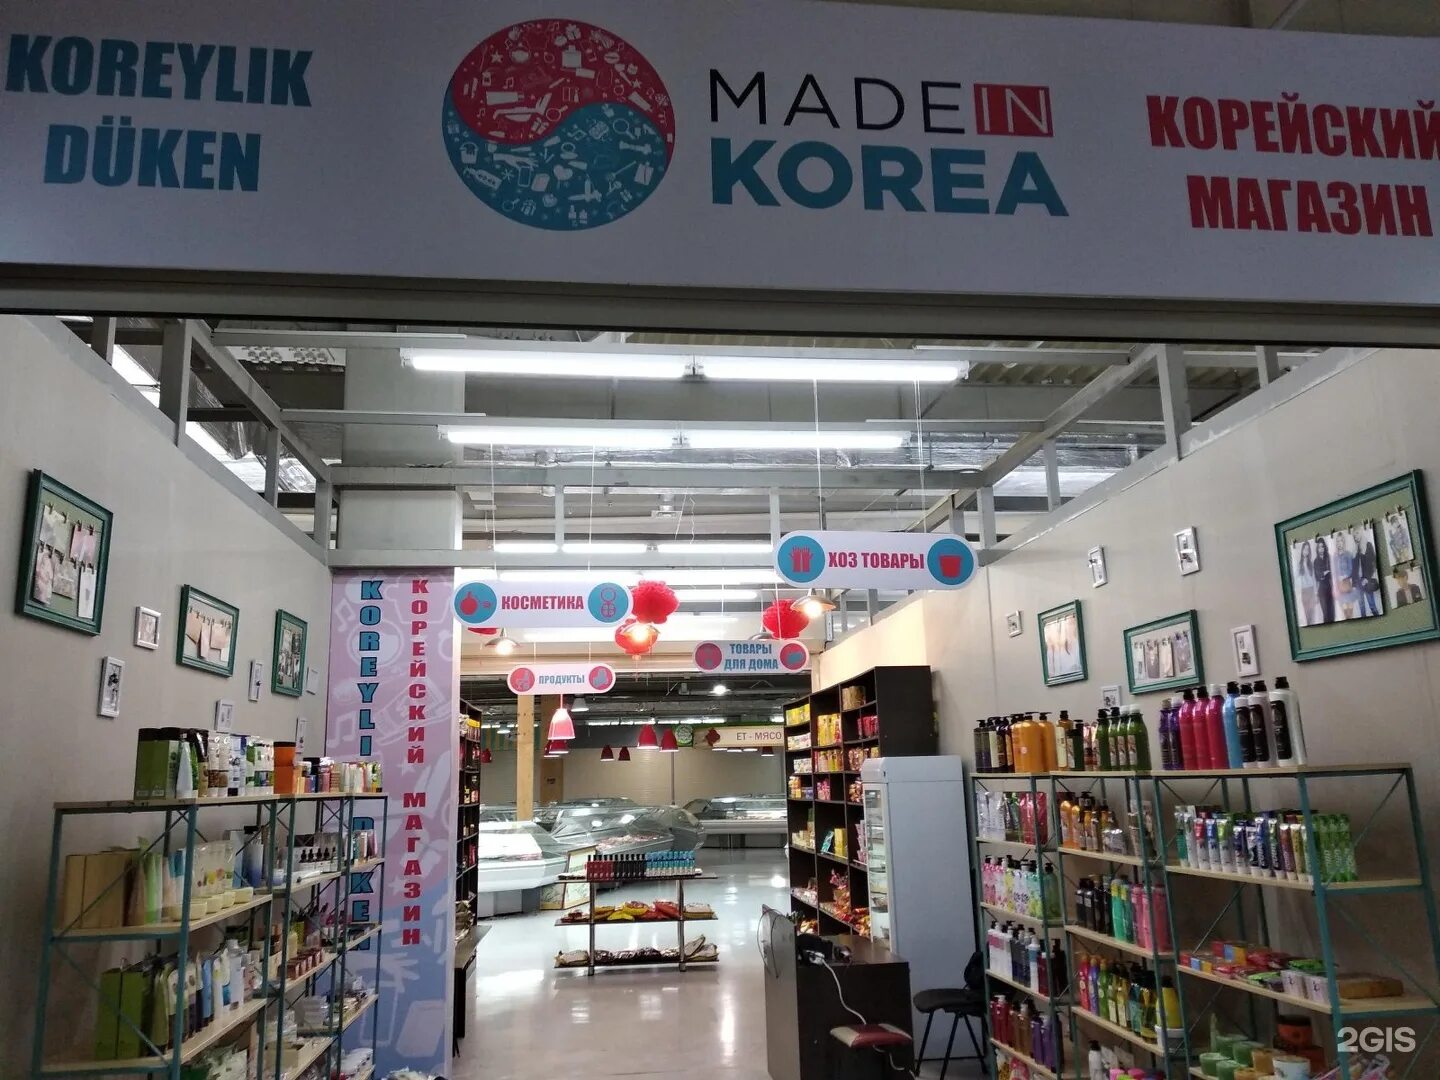 Магазины в Корее. Корейский магазин здание. Корейский магазин Алматы. Made in Korea магазин.